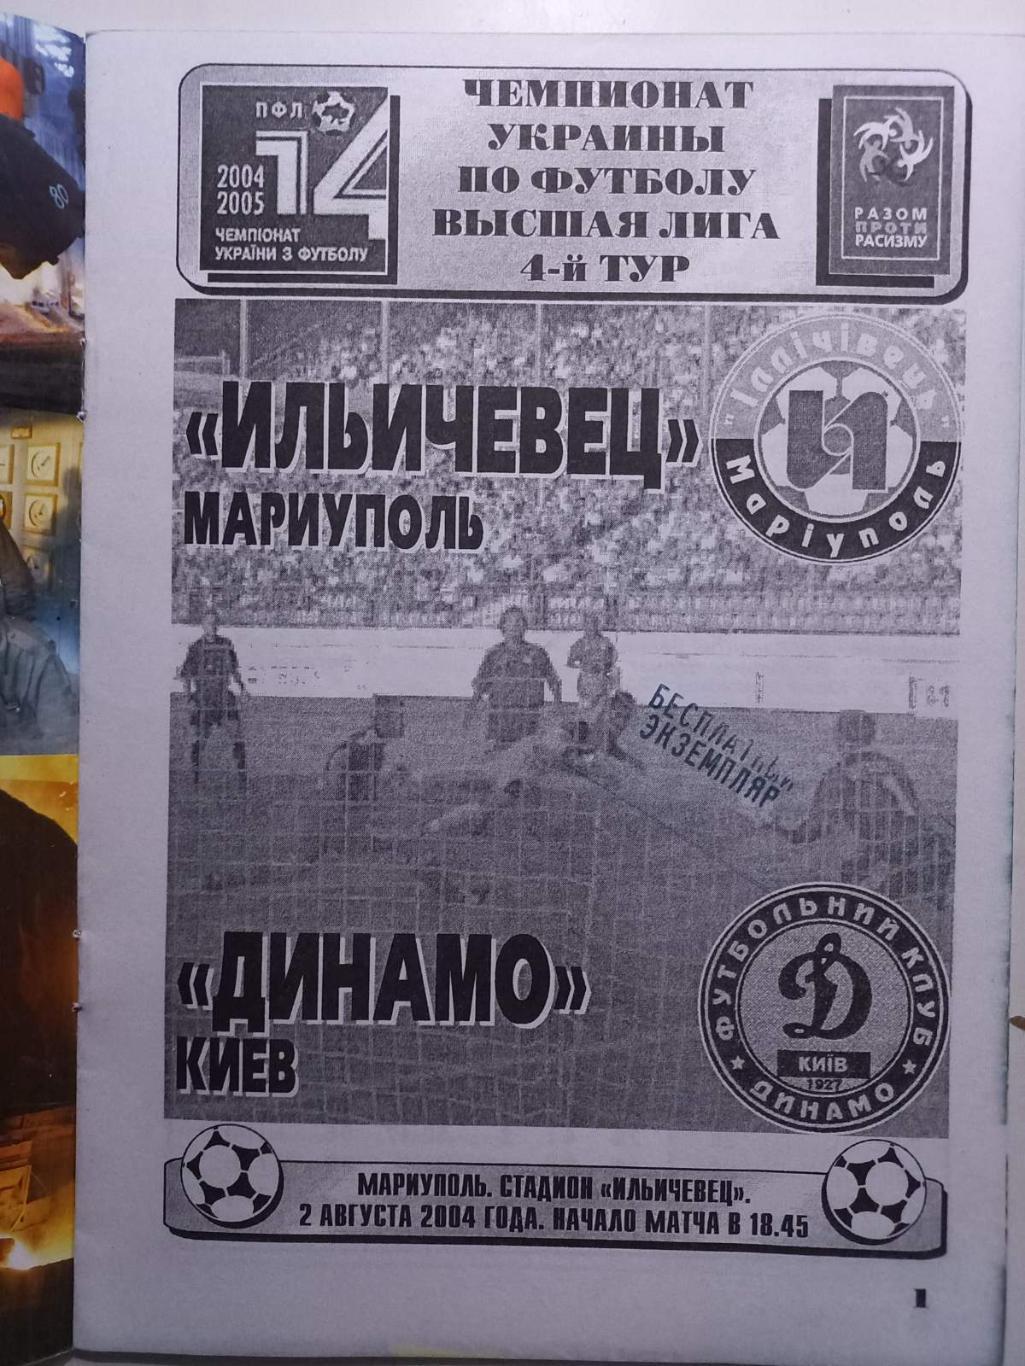 Іллічівець Маріуполь - Динамо Київ. 02.08.2004.. 1